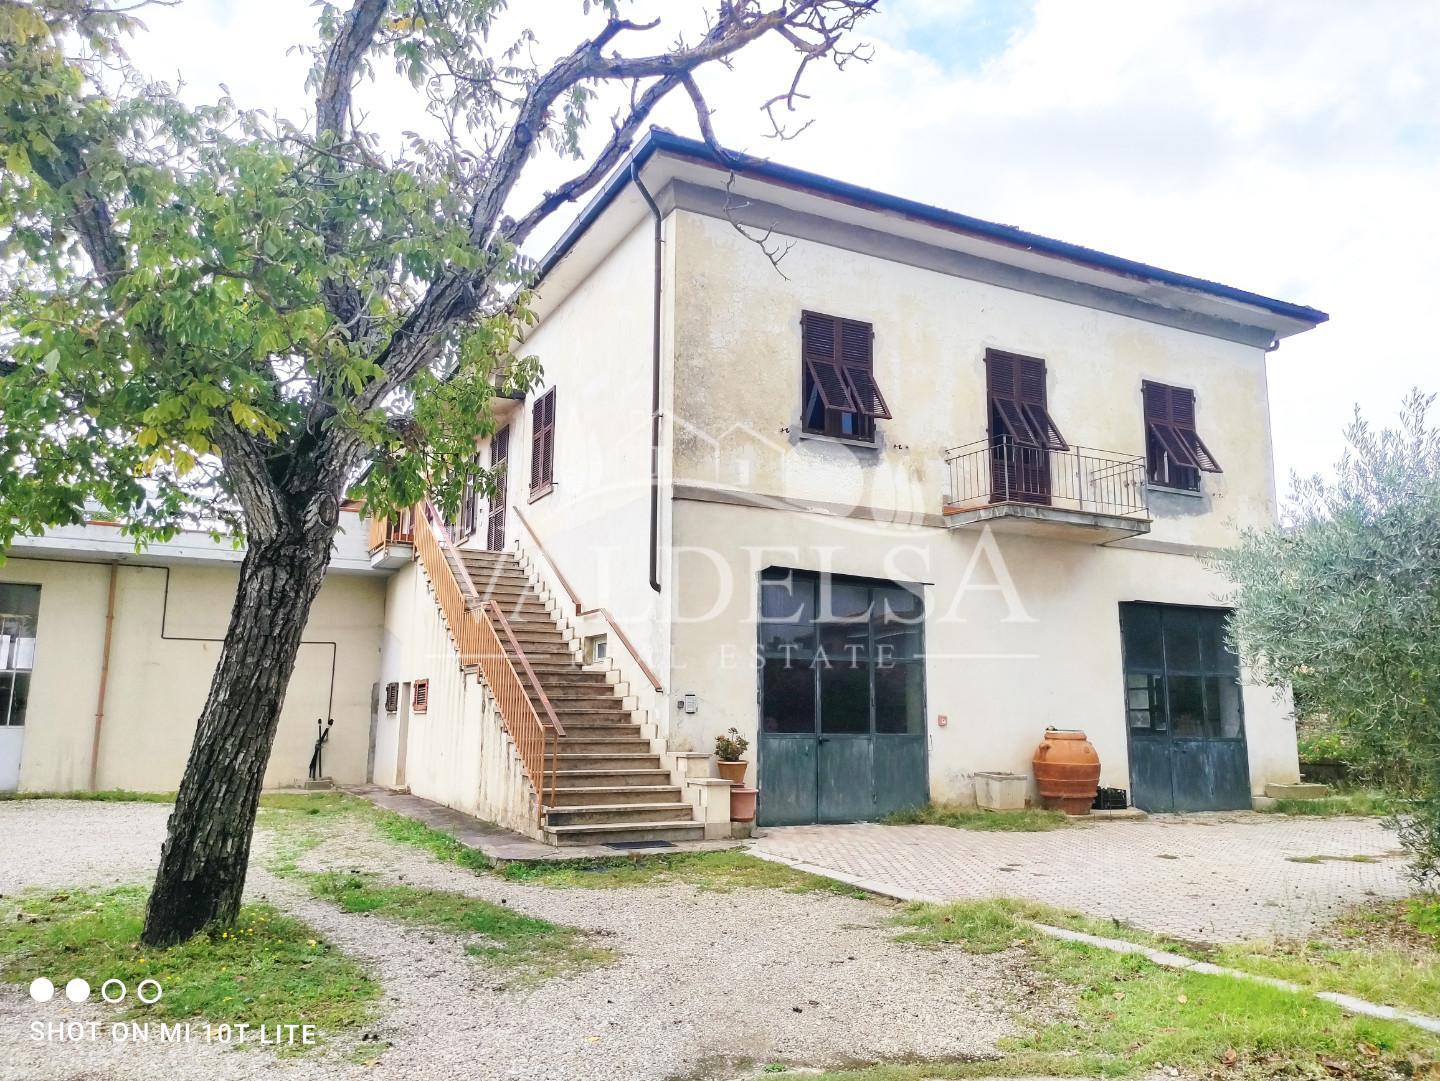 Farmhouse for sale in Colle di Val d'Elsa (SI)